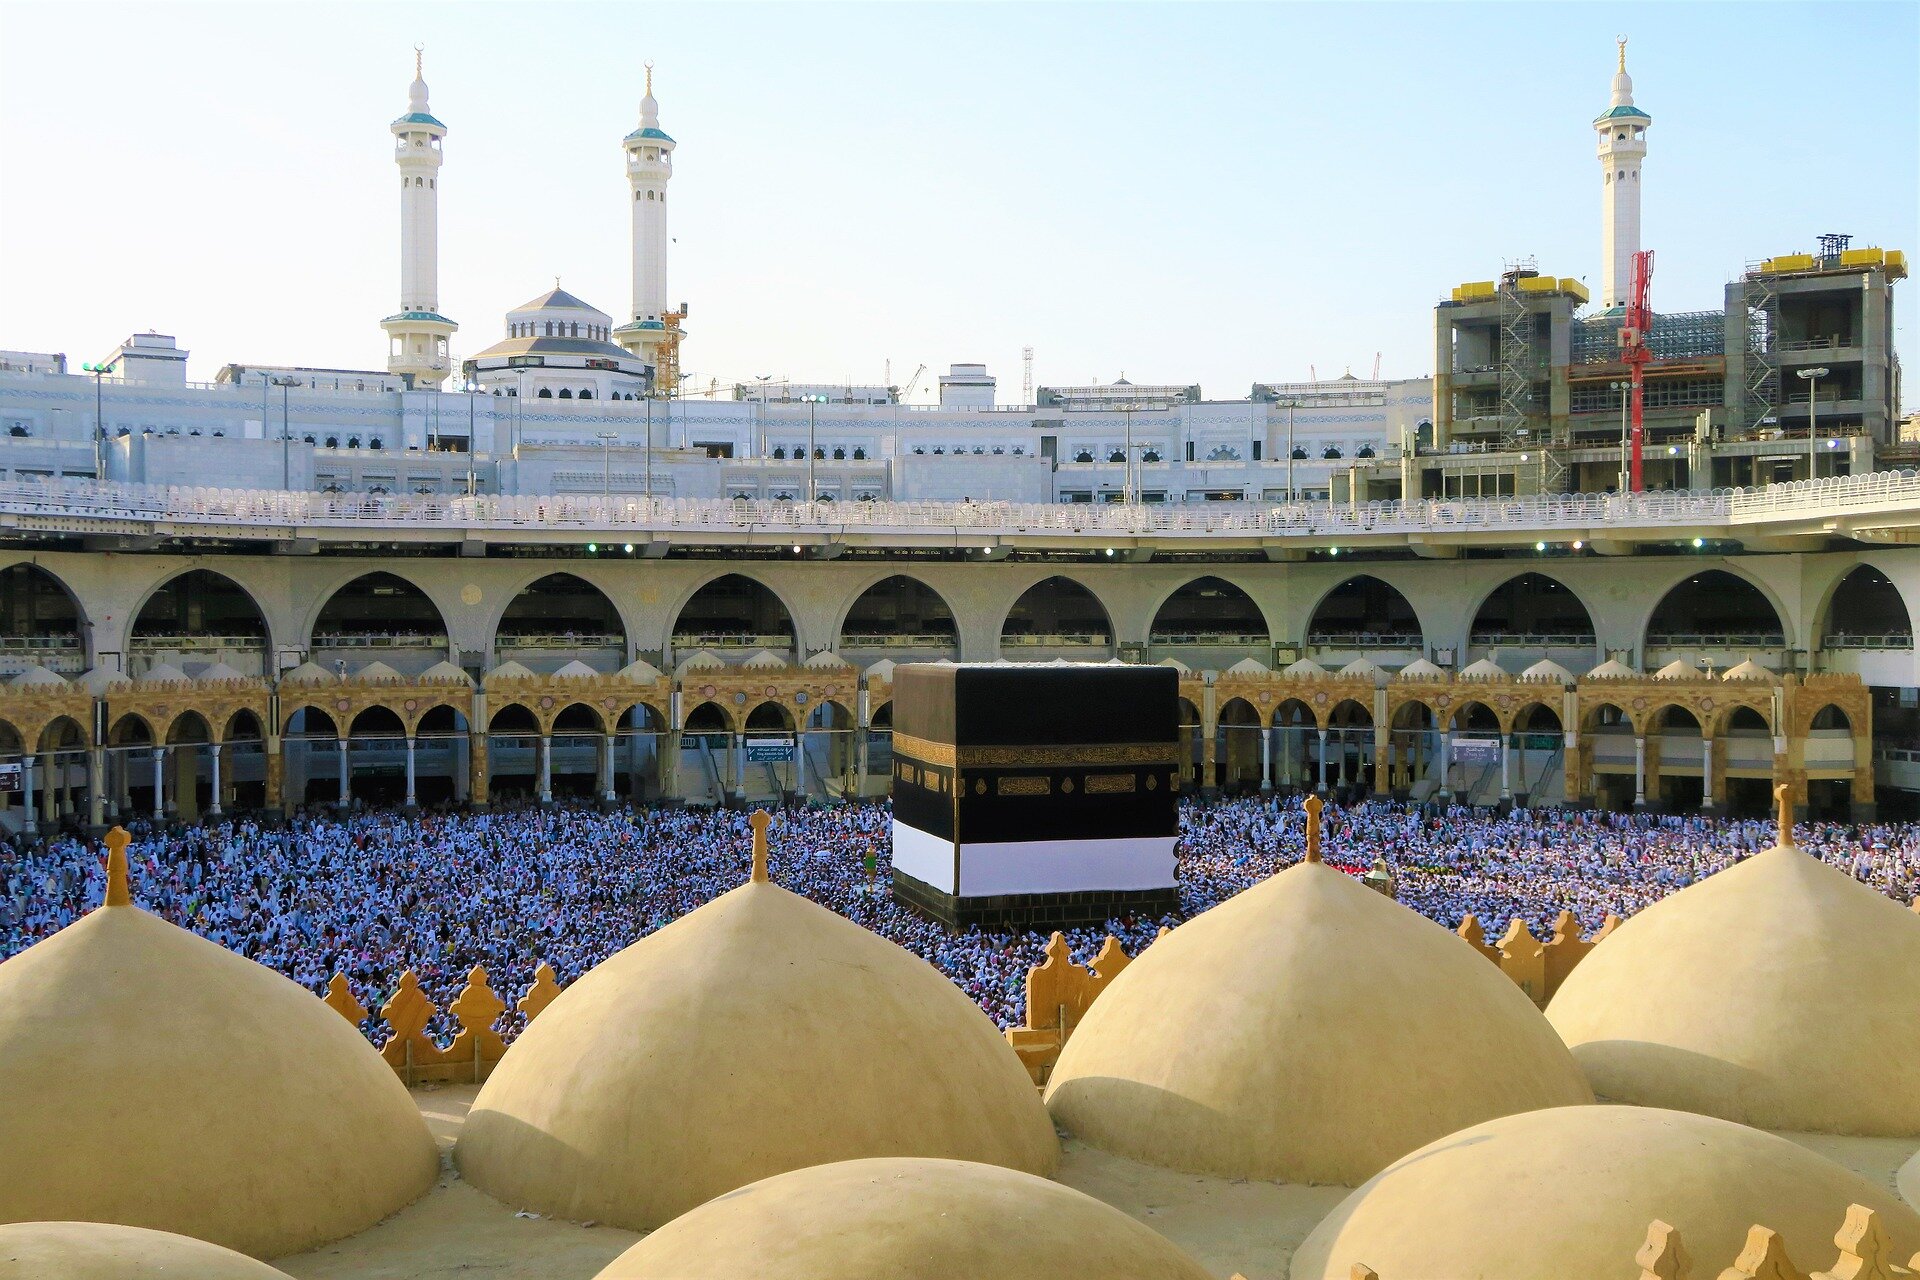 Zdjęcie przedstawia dziedziniec świątyni w Mekce. Jest on okrągły, otoczony kolumnadą i podcieniami. Na dziedzińcu znajdują się setki modlących się ludzi.